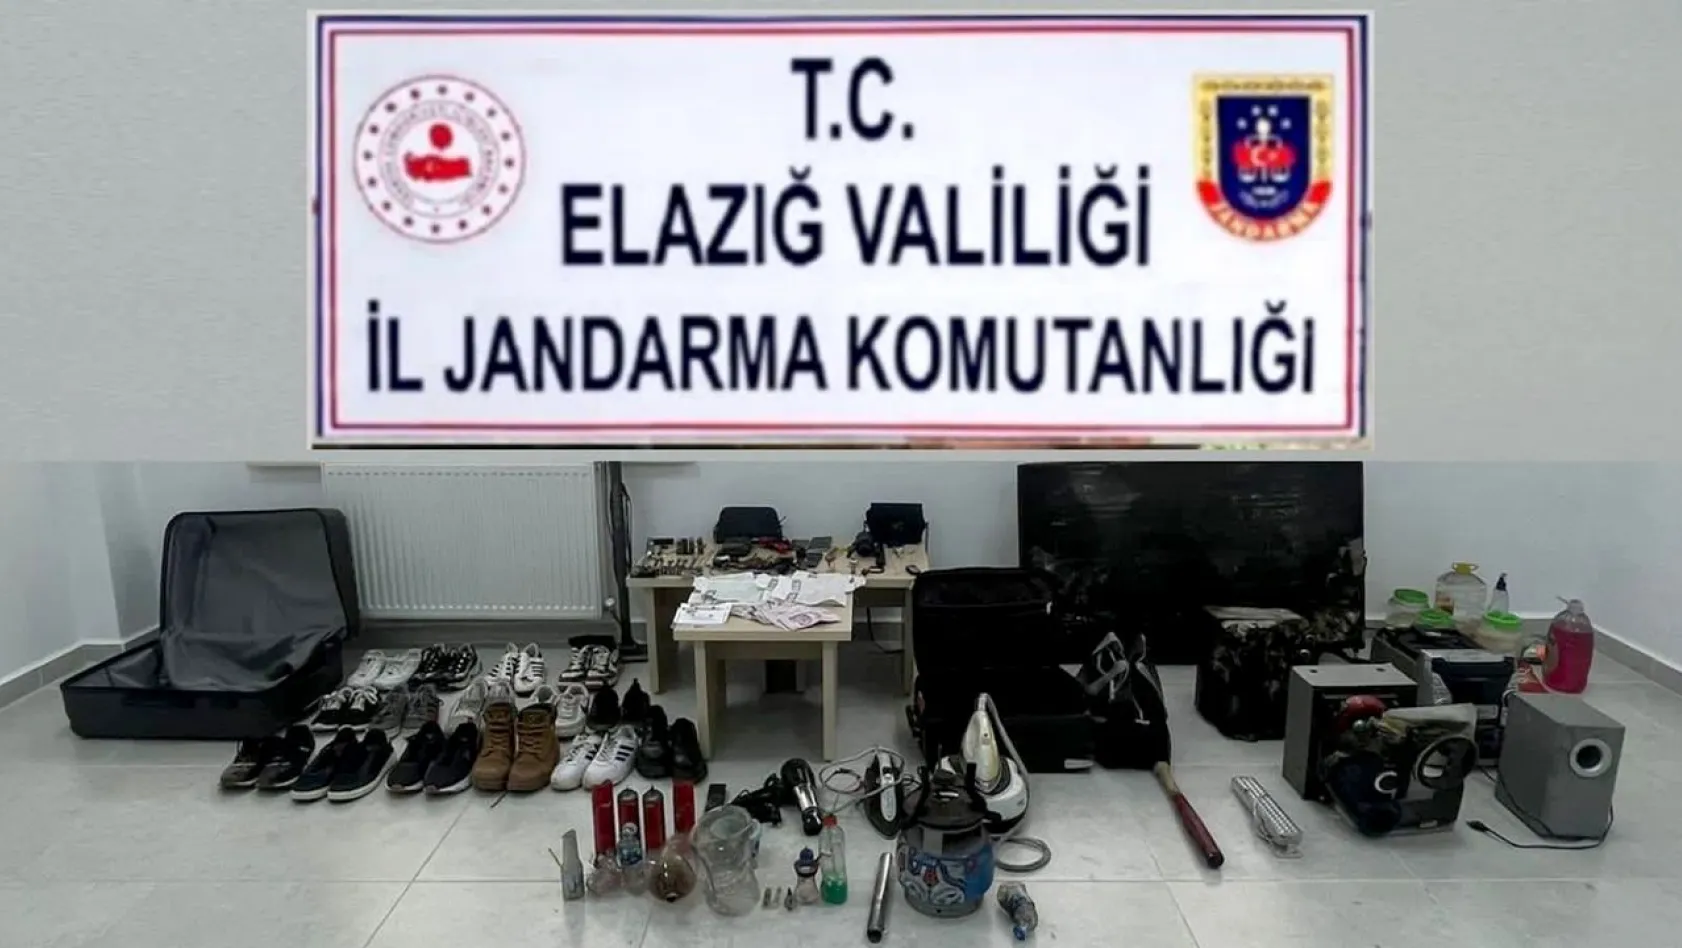 Elazığ'da hırsızlık şüphelisi iki kişi tutuklandı